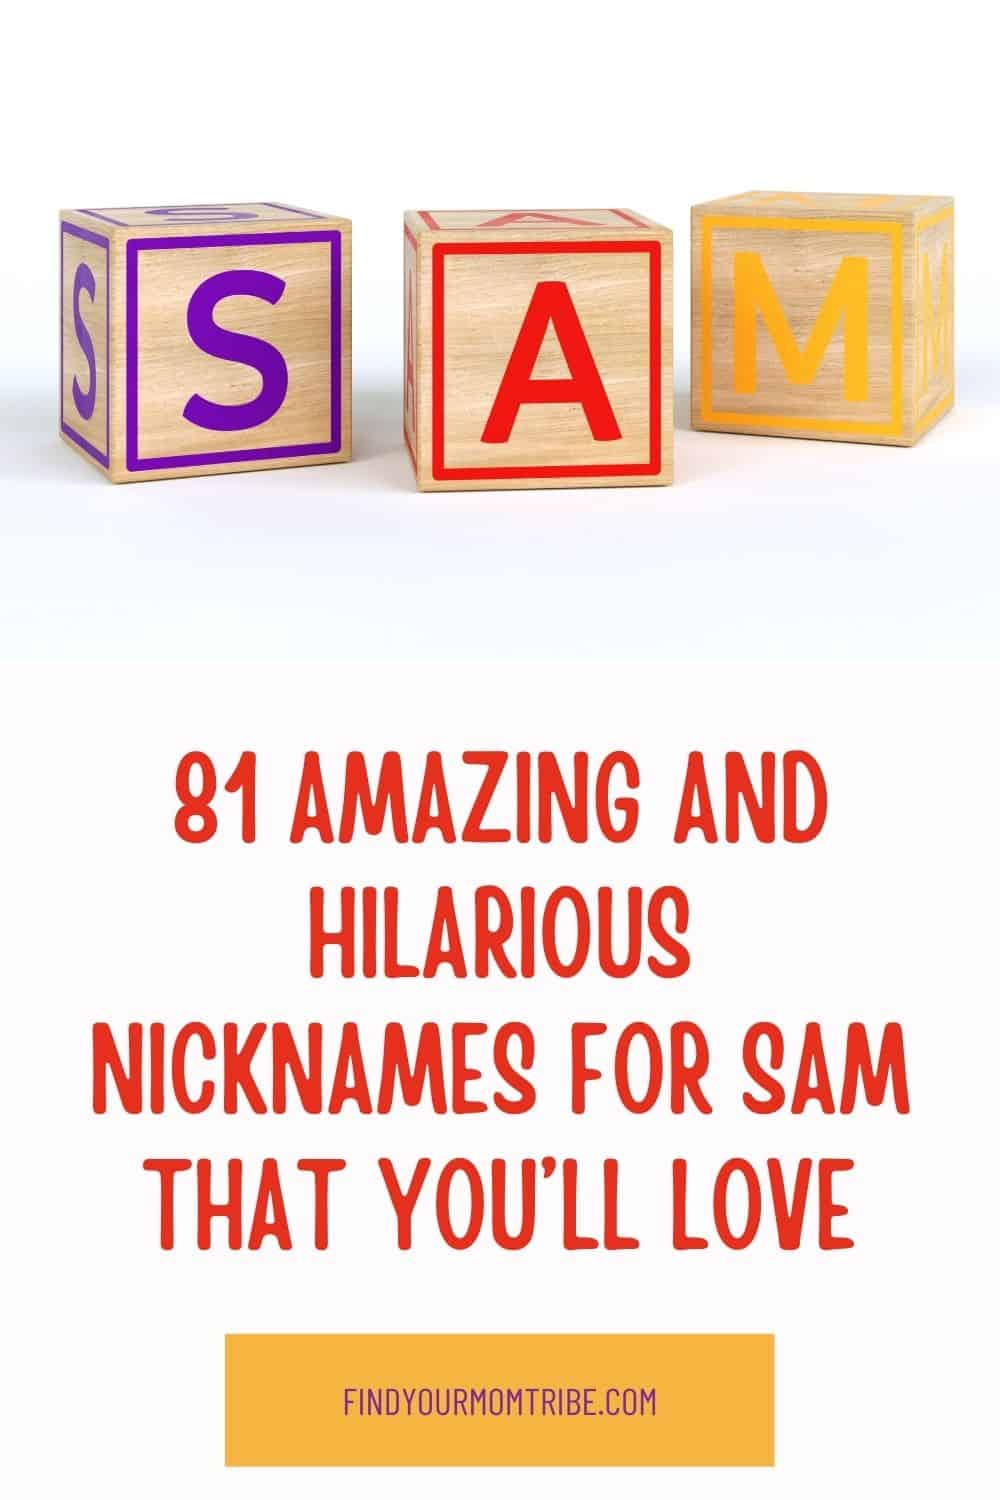 Pinterest nicknames for sam 